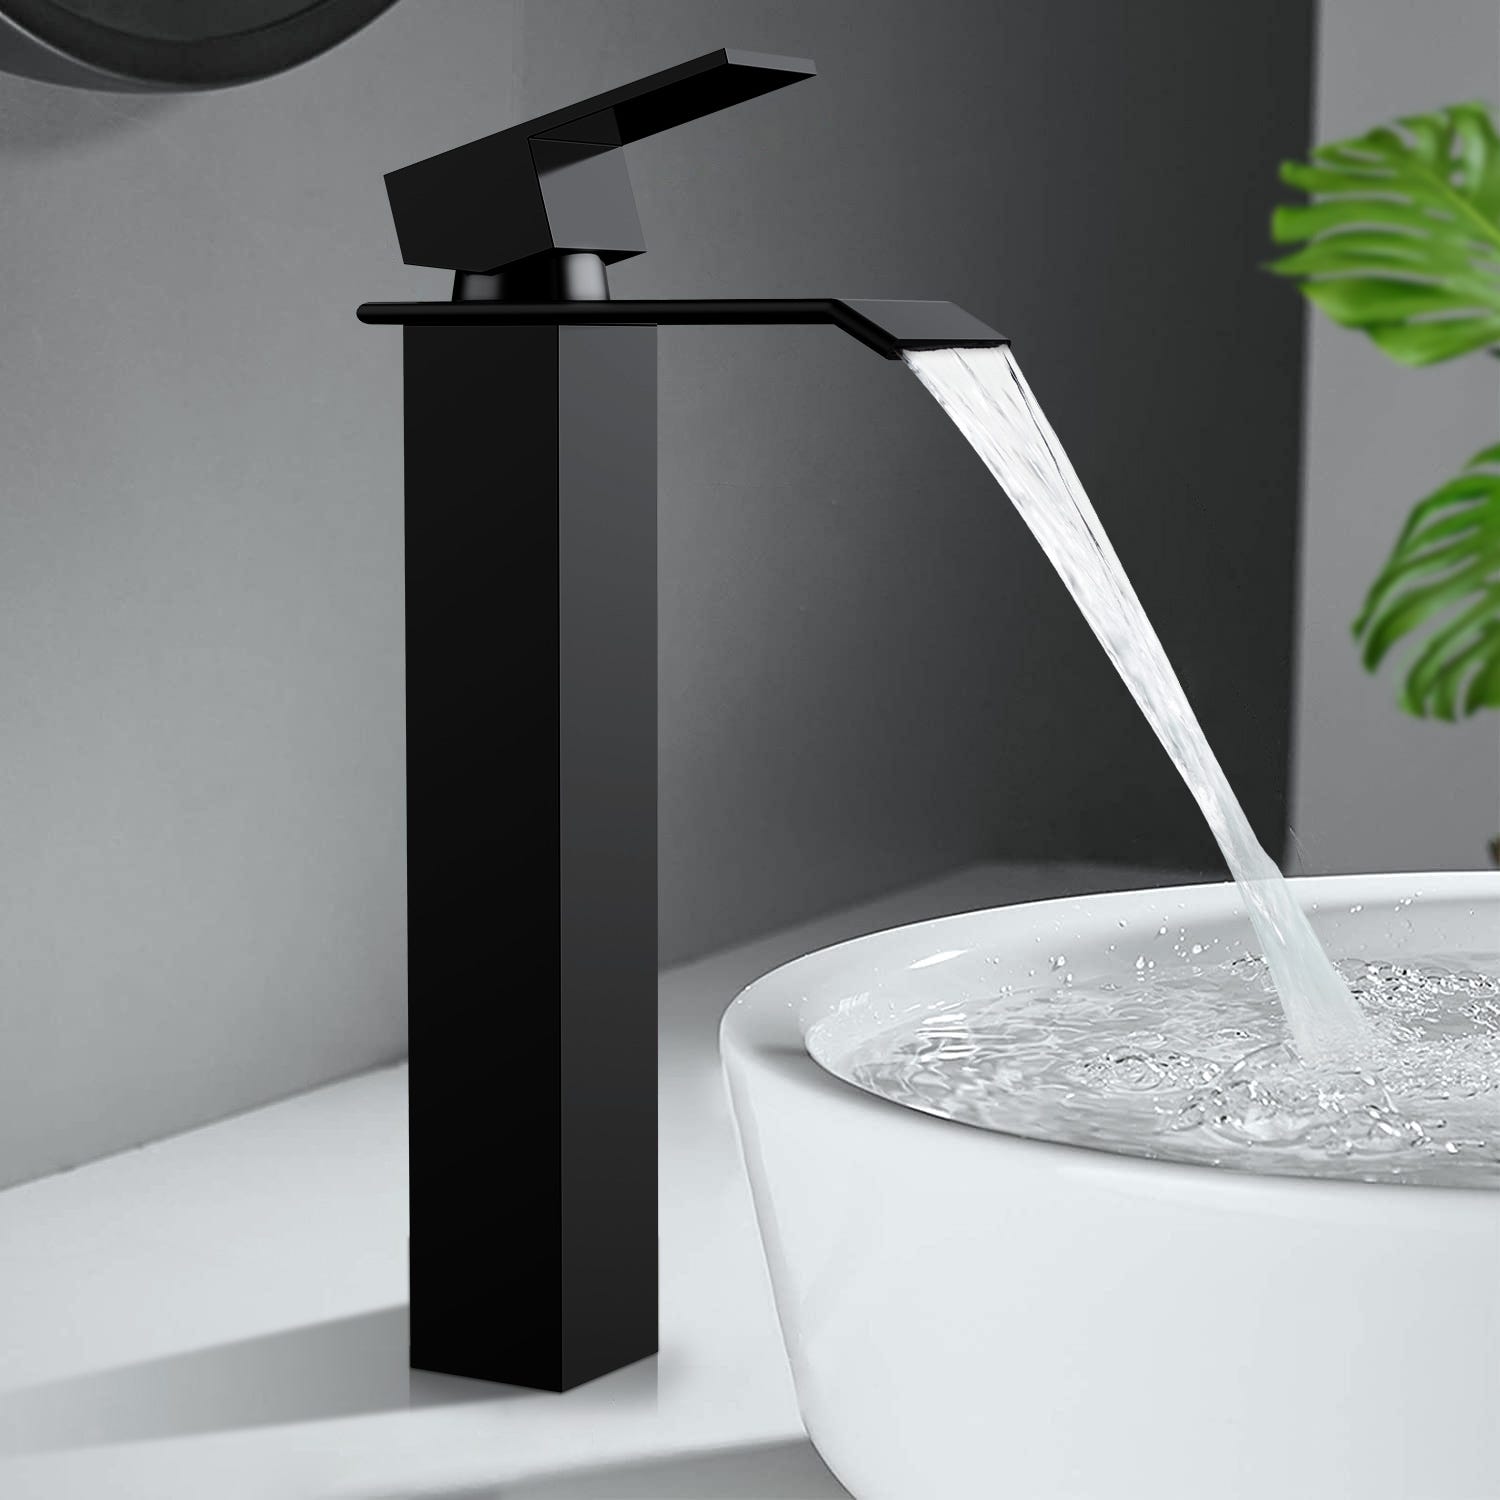 Robinet Mitigeur lavabo cascade vasque salle de bain mat noir en cuivre -  OLY MAGIC